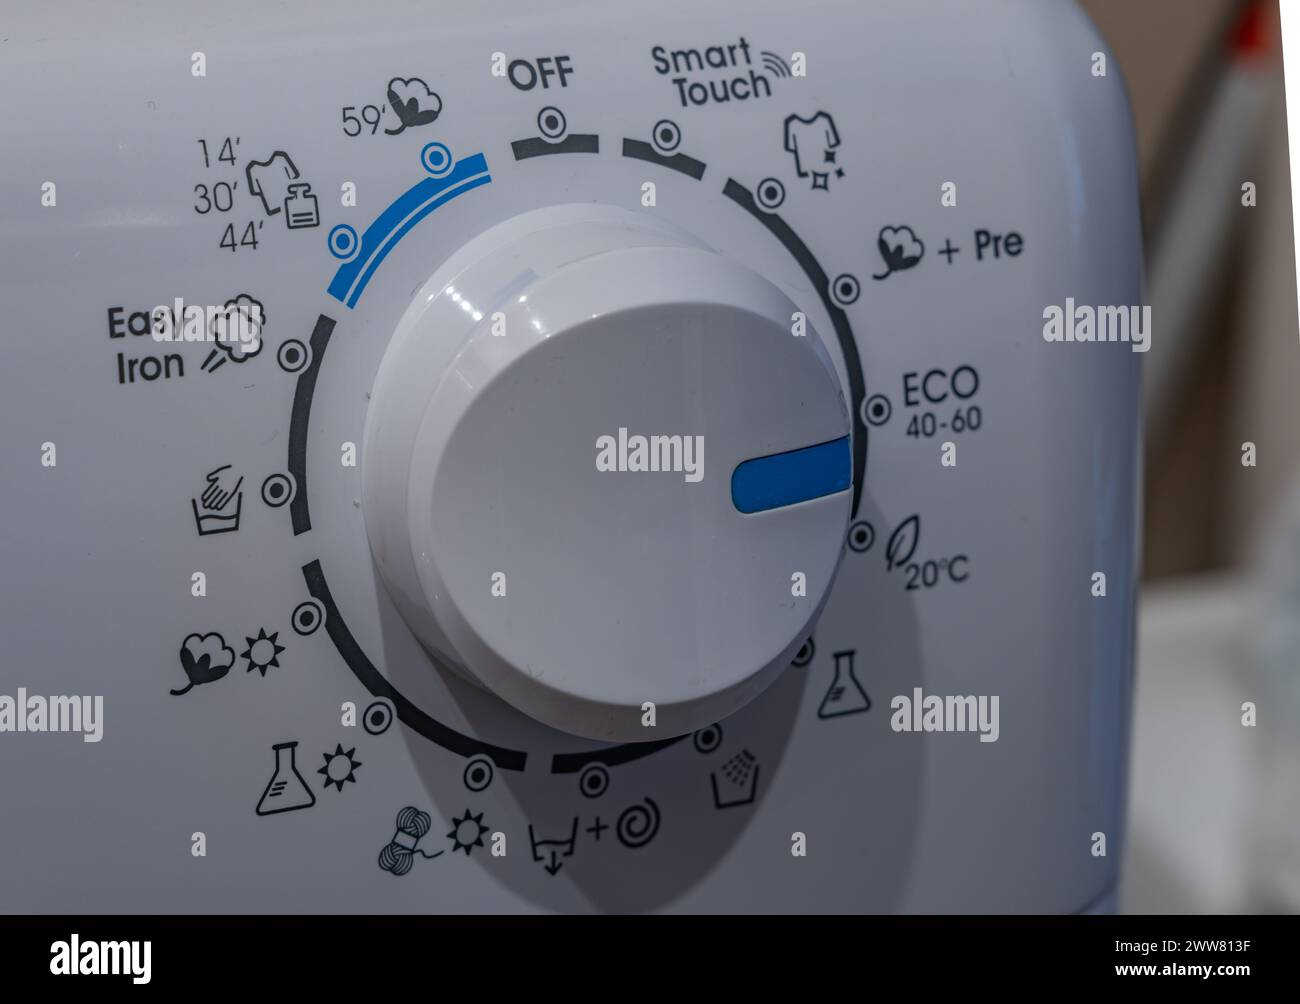 Saving water and energy ecological washing machines ecological washing program ECO Stock Photo